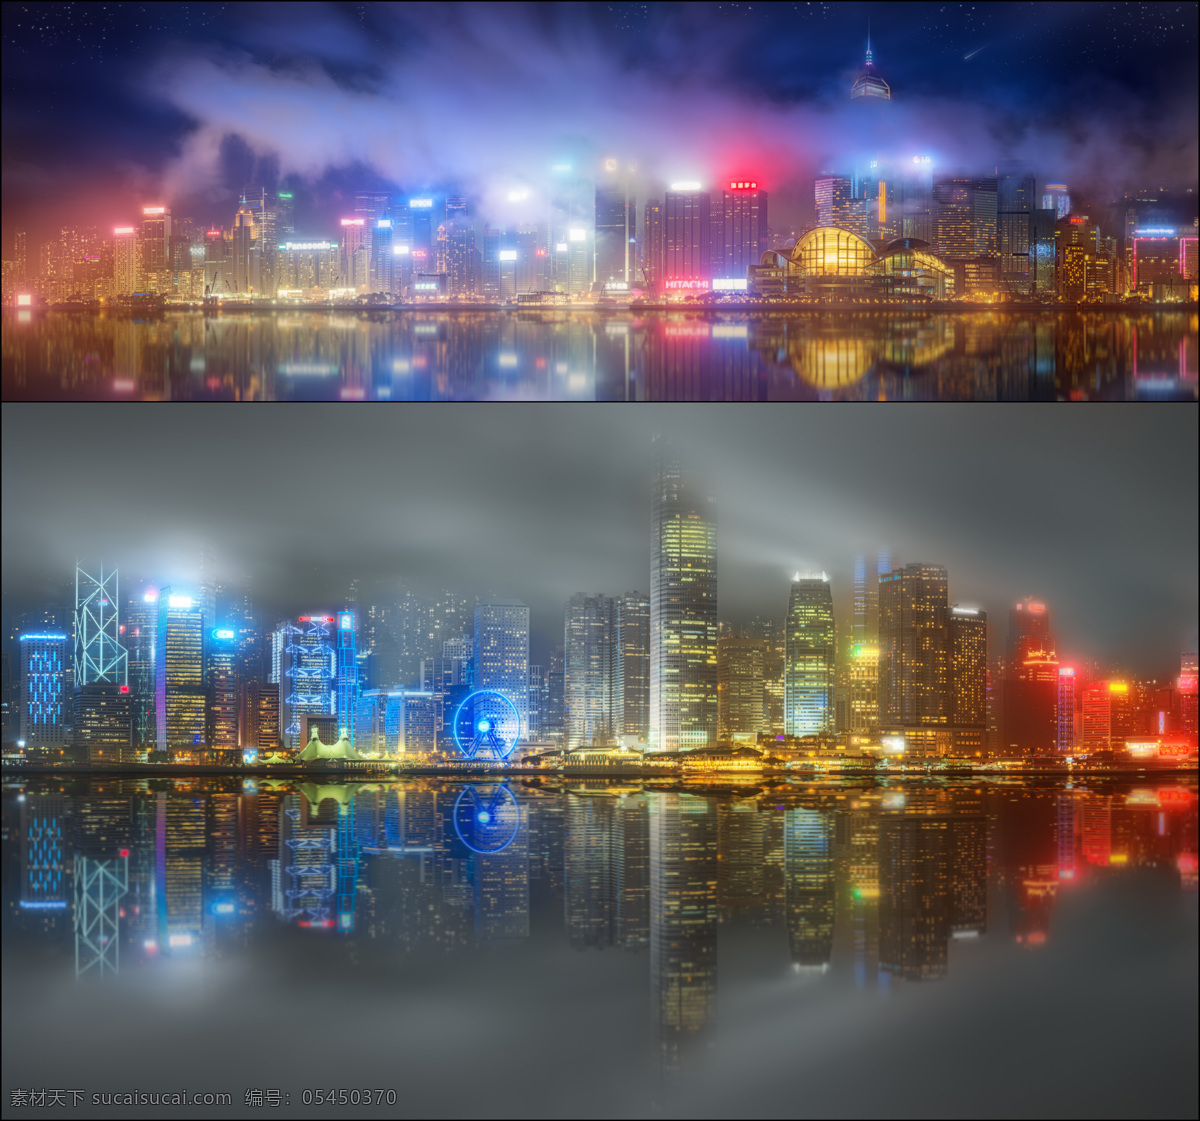 梦幻 香港 夜景 维多利亚港 城市风光 美丽风景 风景摄影 美丽景色 旅游景点 香港夜景 环境家居